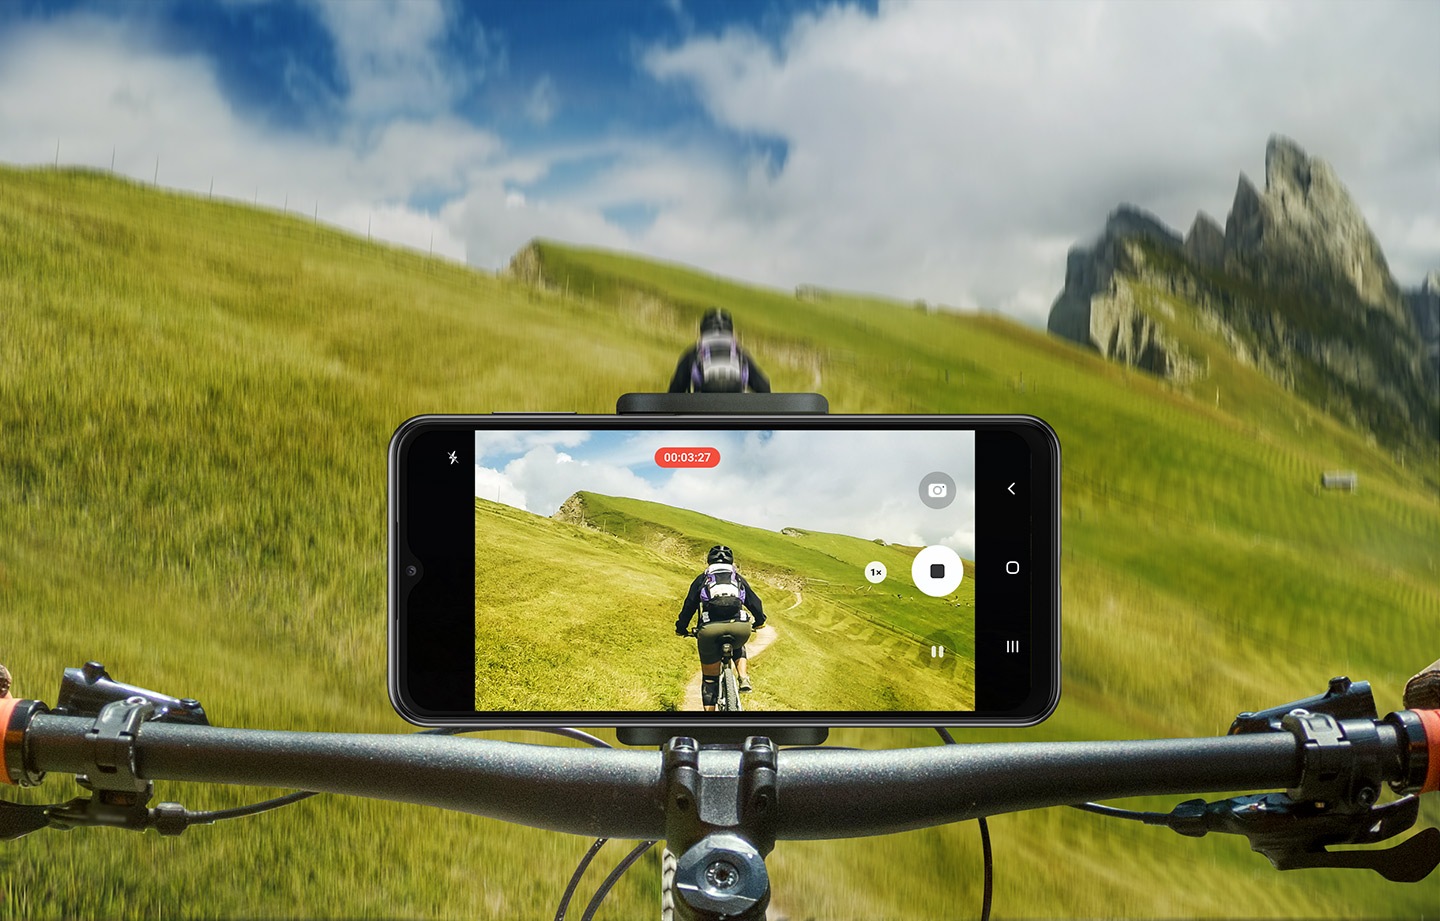 Galaxy A23 5G postavljen je na upravljač brdskog bicikla koji se vozi izvan ceste po travnatoj padini. Njegova kamera snima biciklista ispred njih.